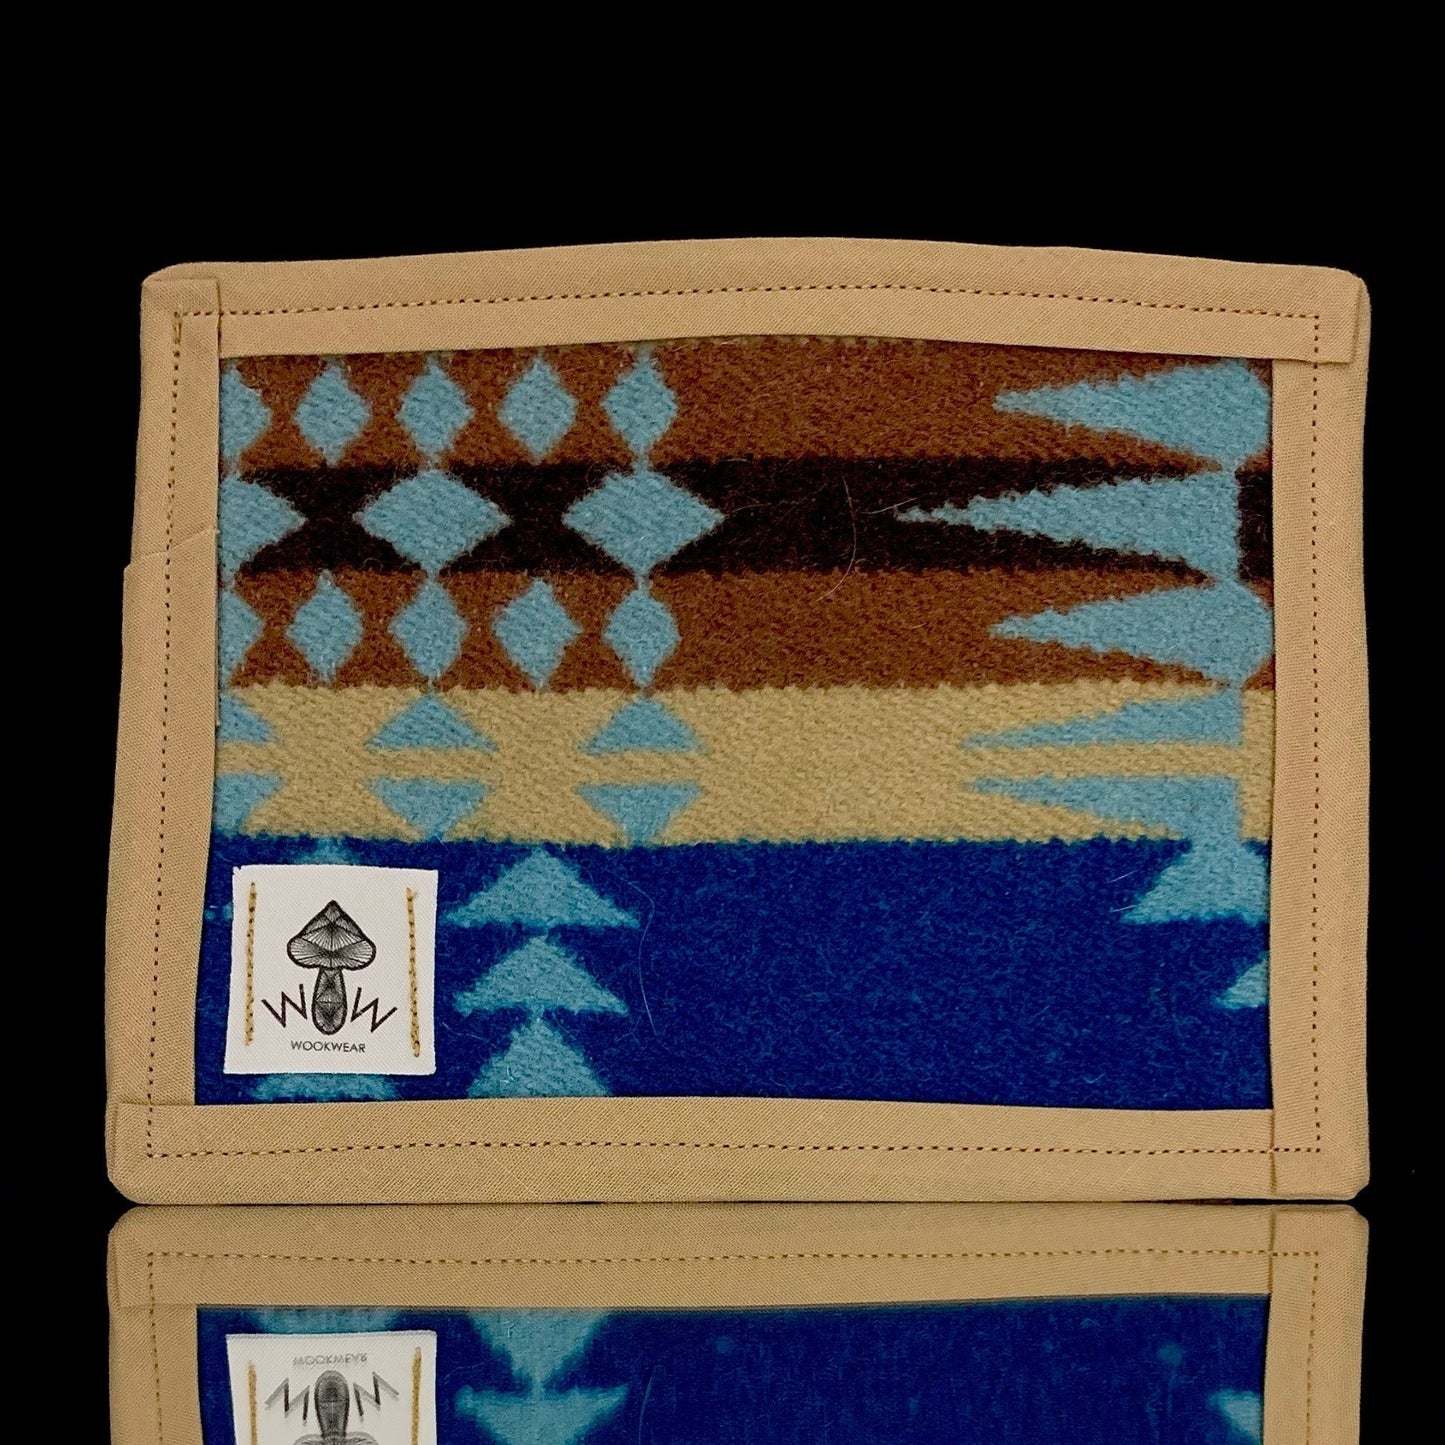 6.5” x 4.5” Pendleton mat by Wook Wear